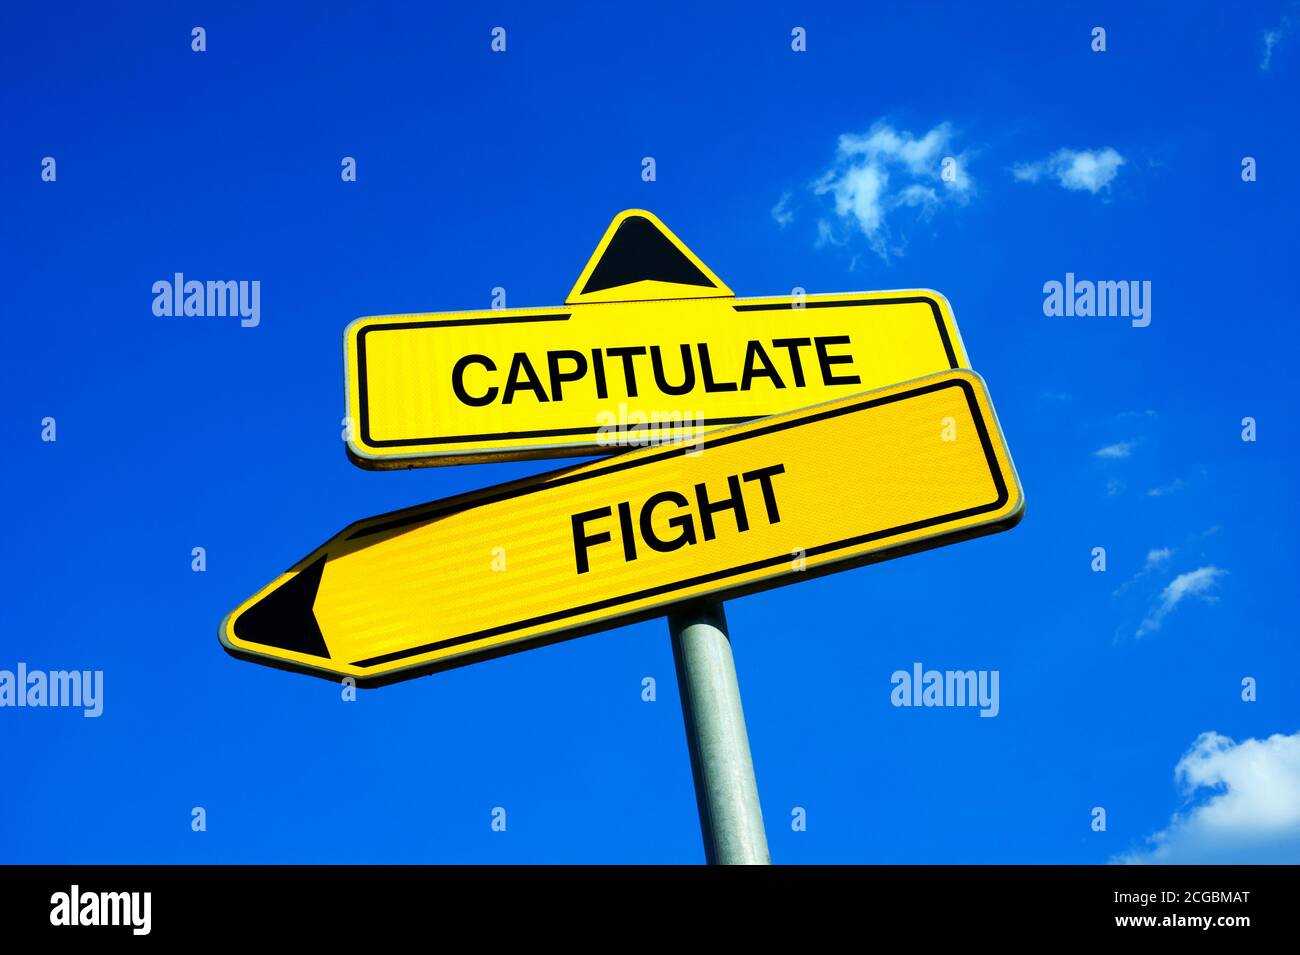 Capitalulate vs Fight - segnale di traffico con due opzioni - essere coraggiosi e continuare in battaglia o arrendersi e essere sconfitti. Coraggio e fortezza contro speranza Foto Stock